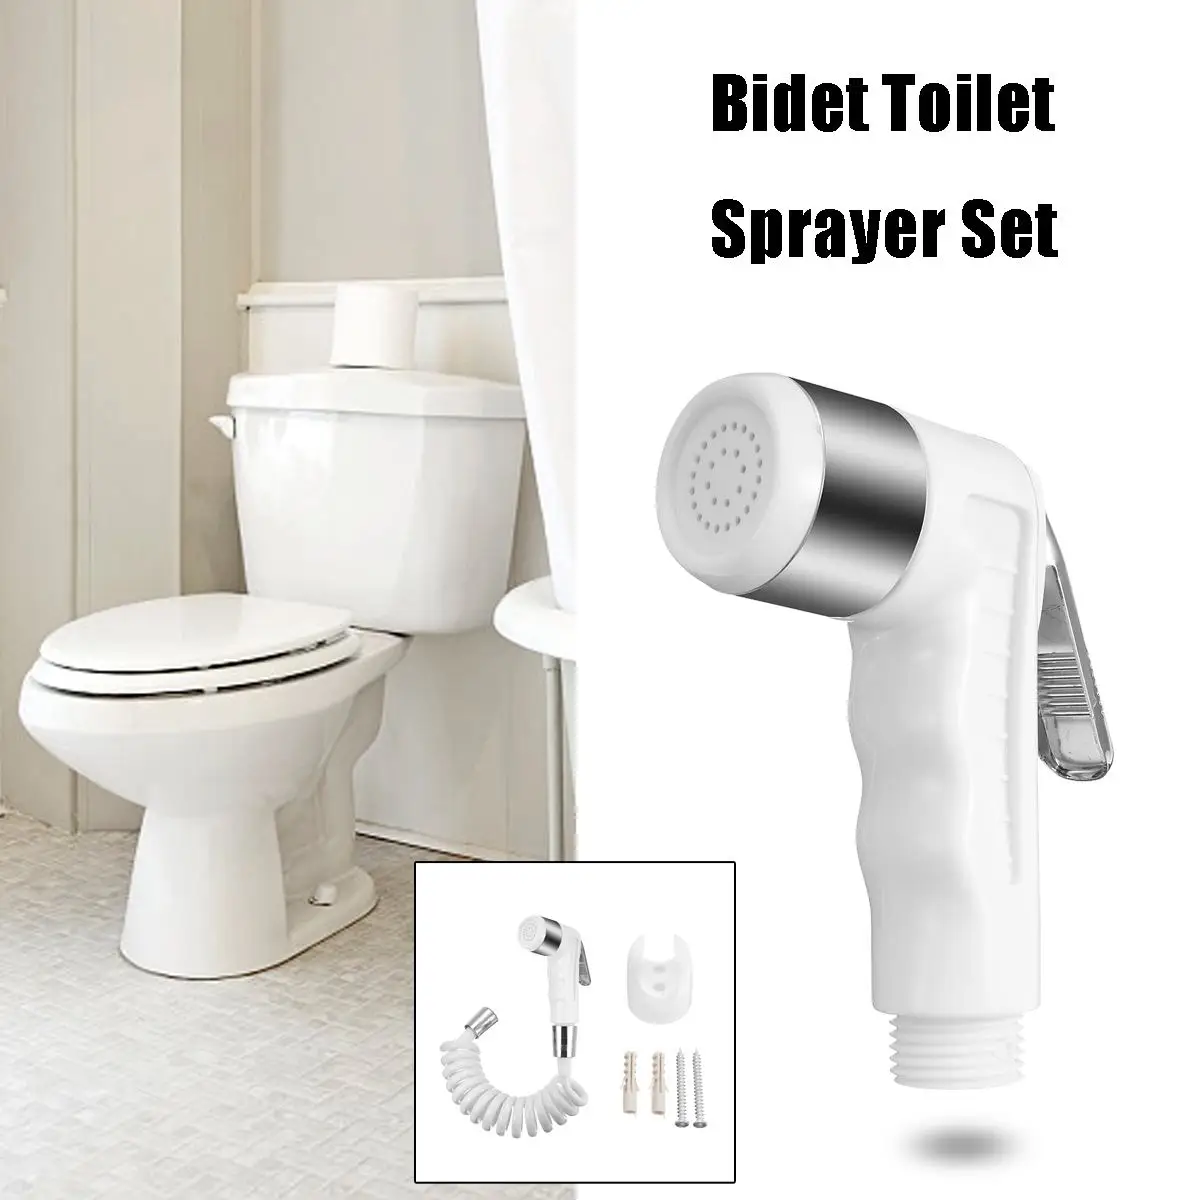 Белый ABS Ручной портативный биде туалет сопло распылитель набор ванная Биде Насадка с 1,5 м эластичный душевой шланг